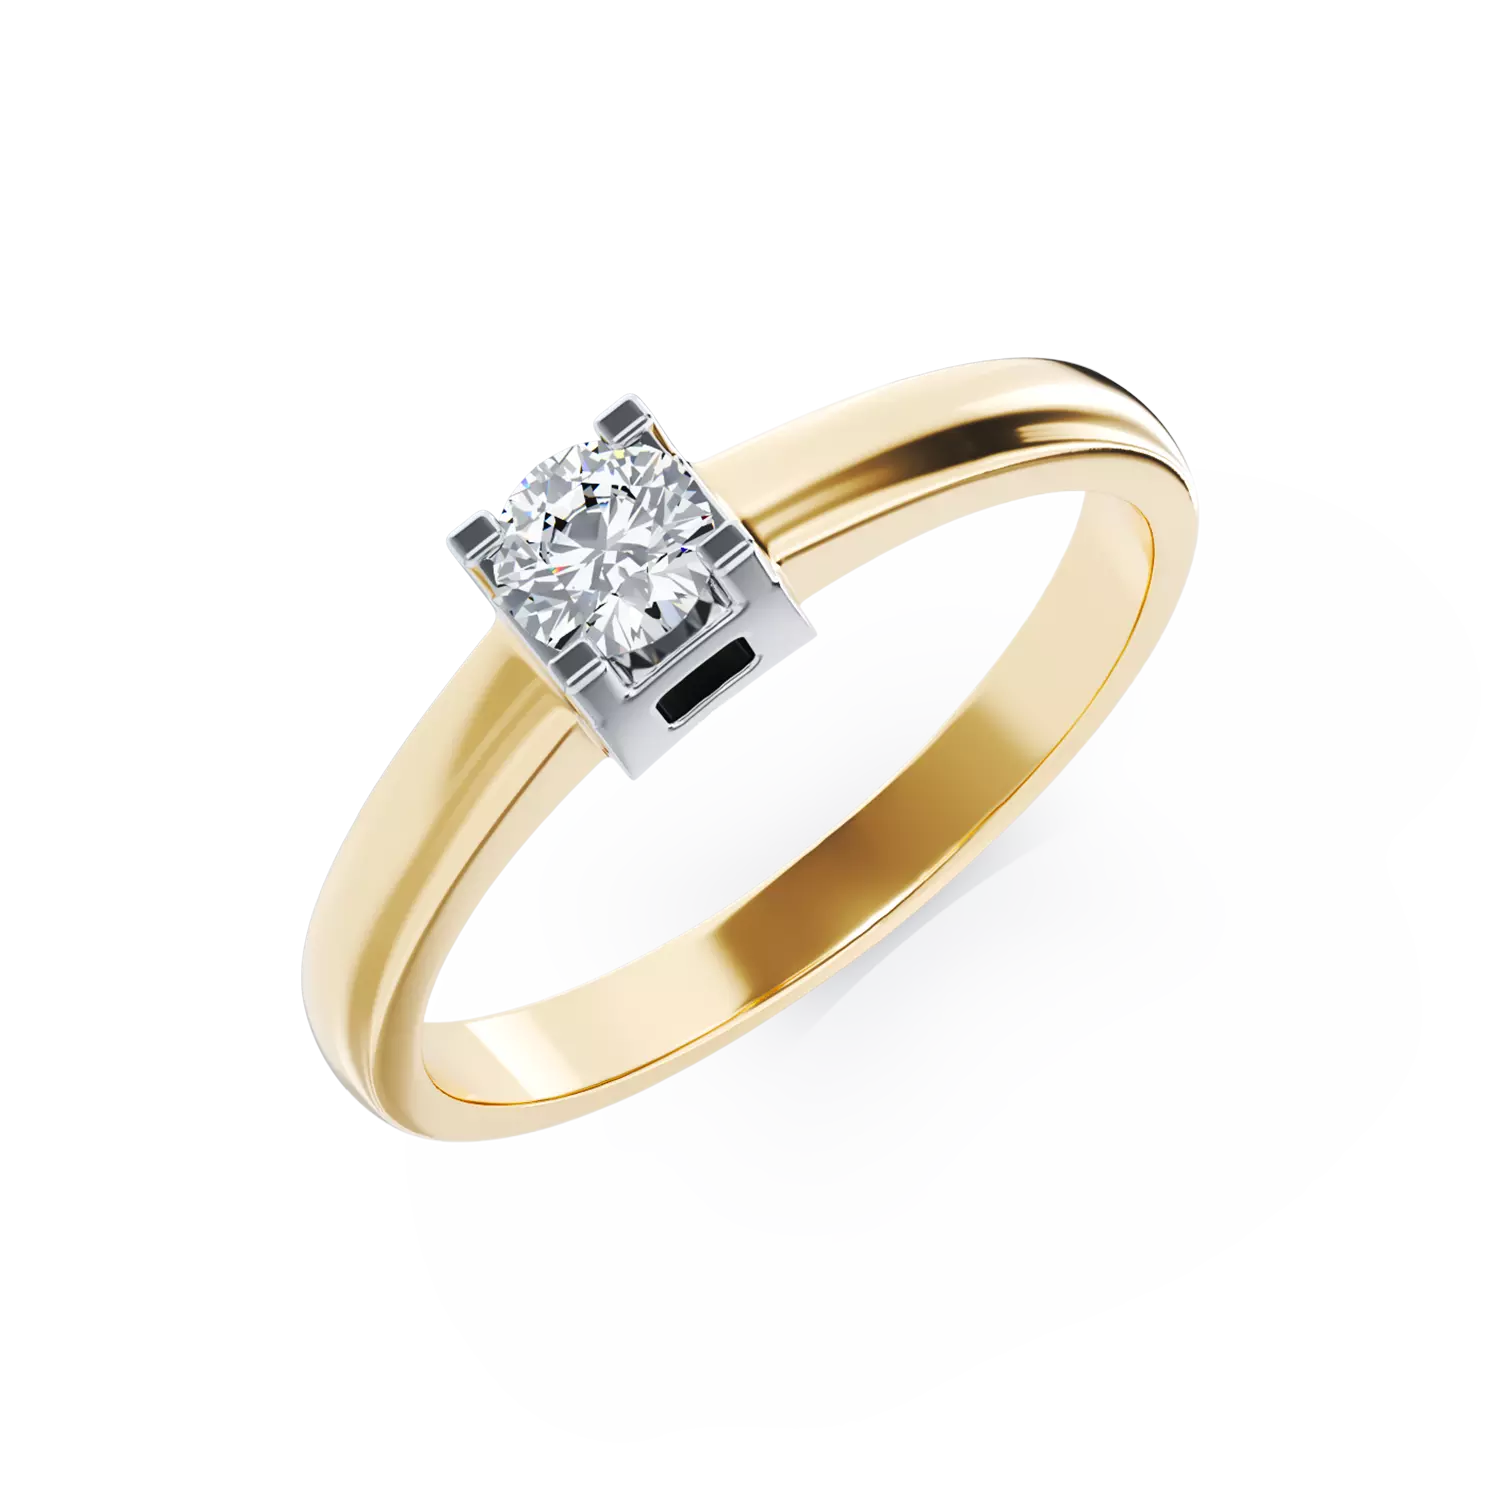 Eljegyzési gyűrű 18K-os fehér aranyból 0,21ct gyémánttal. Gramm: 2,25